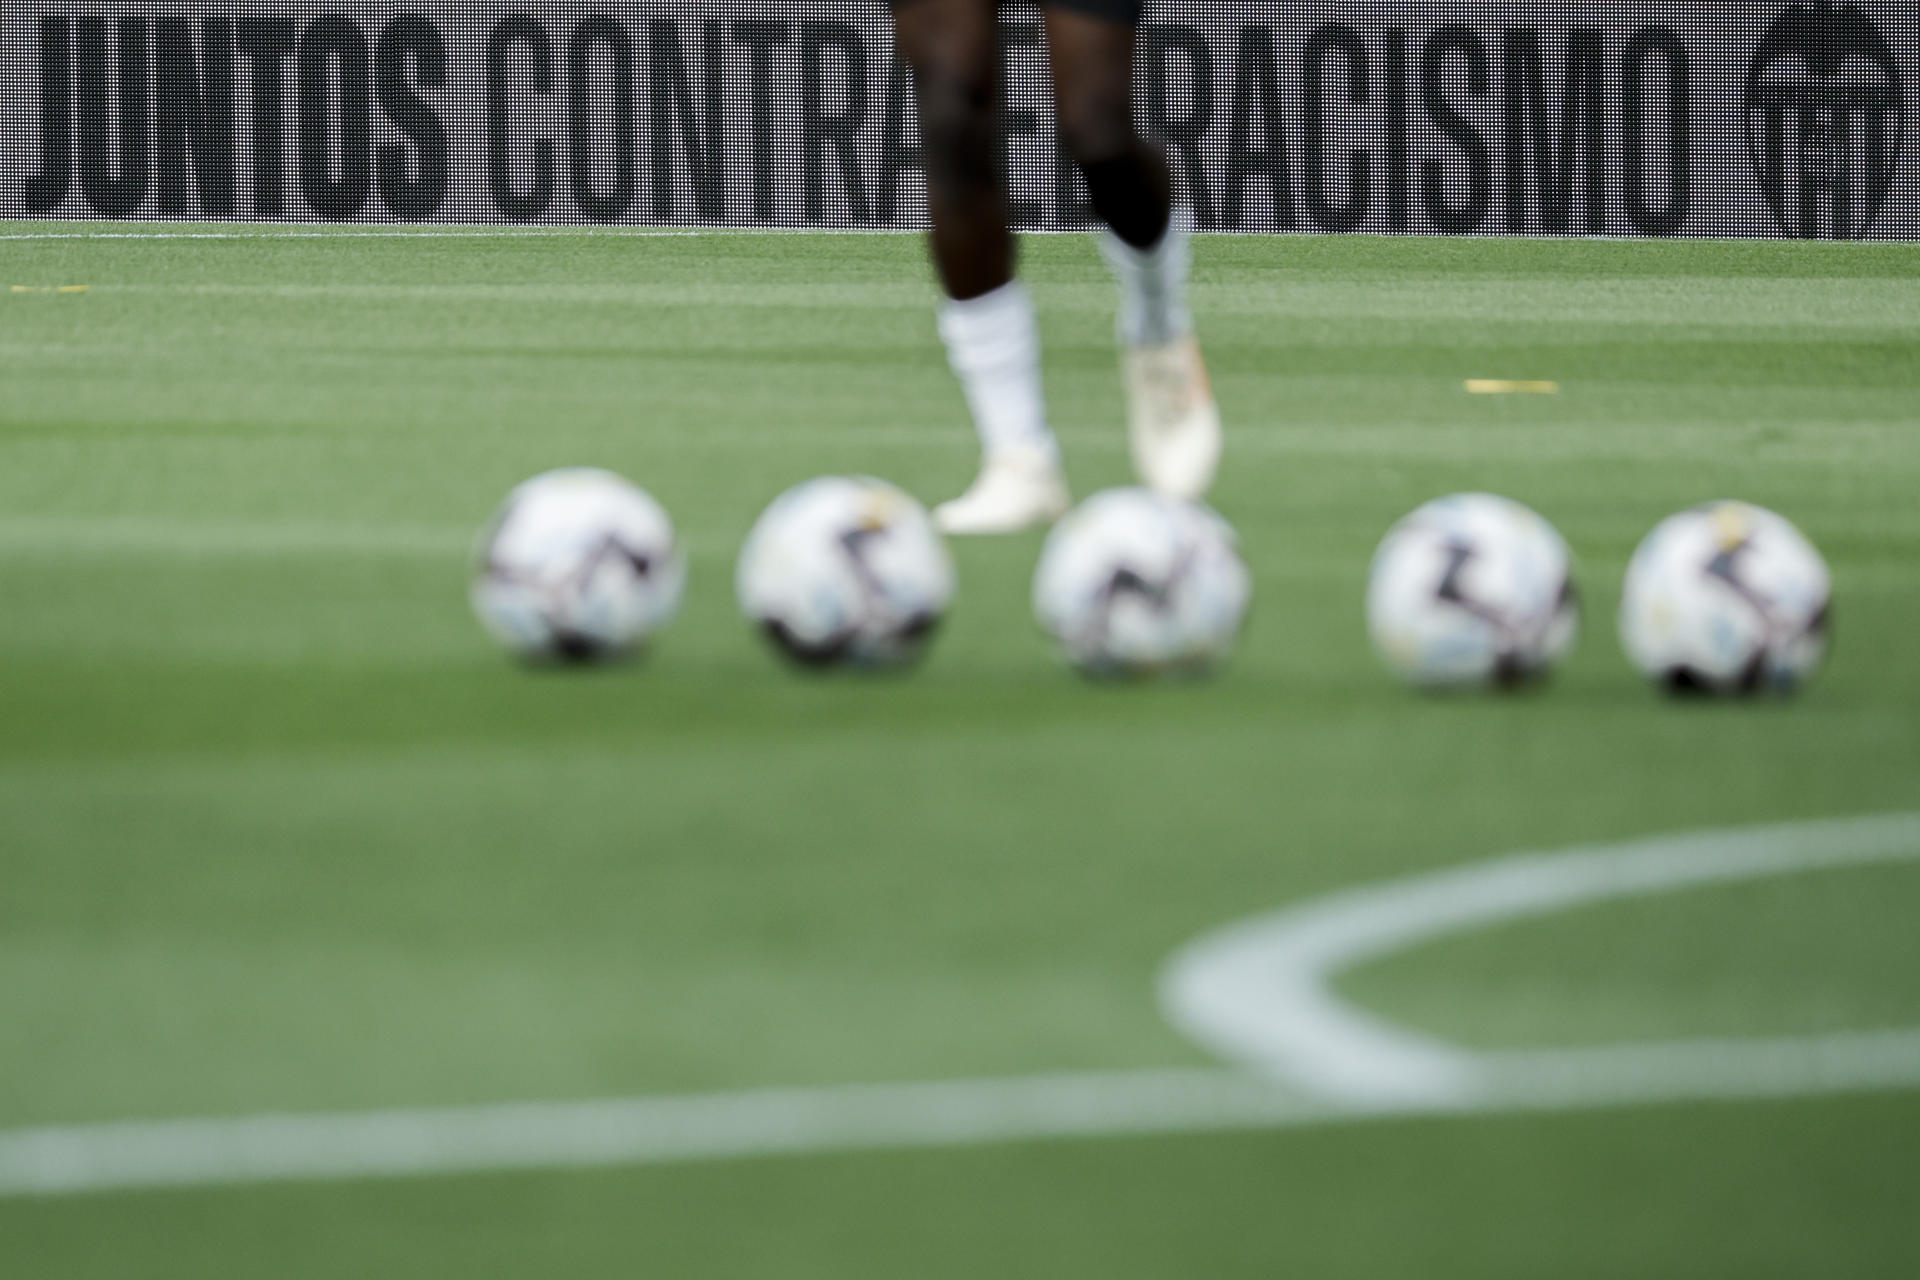 Vista del cartel contra el racismo de Mestalla tras los insultos racistas que se profirieron por varios aficionados a Vinícius en ese estadio. EFE/ Biel Aliño
